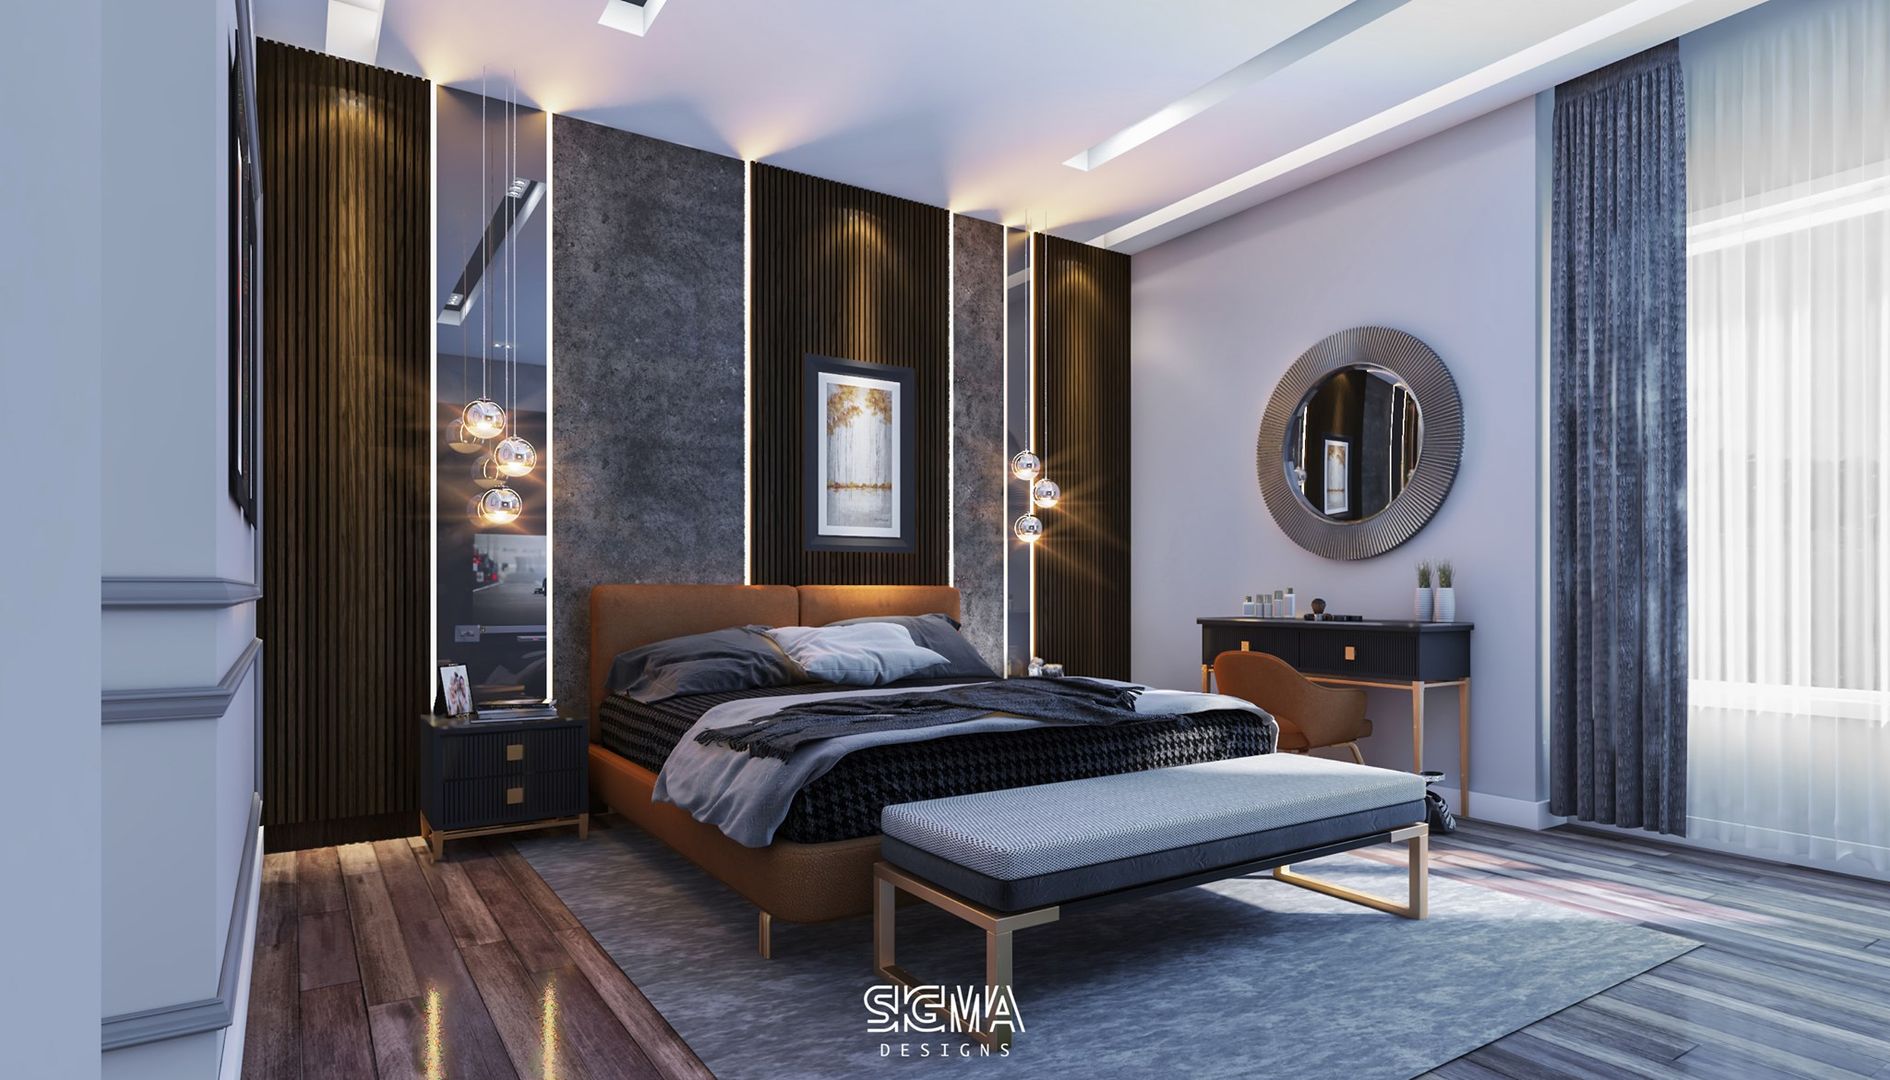 شقة سكنية خاصة - القاهرة الجديدة, SIGMA Designs SIGMA Designs Dormitorios modernos: Ideas, imágenes y decoración